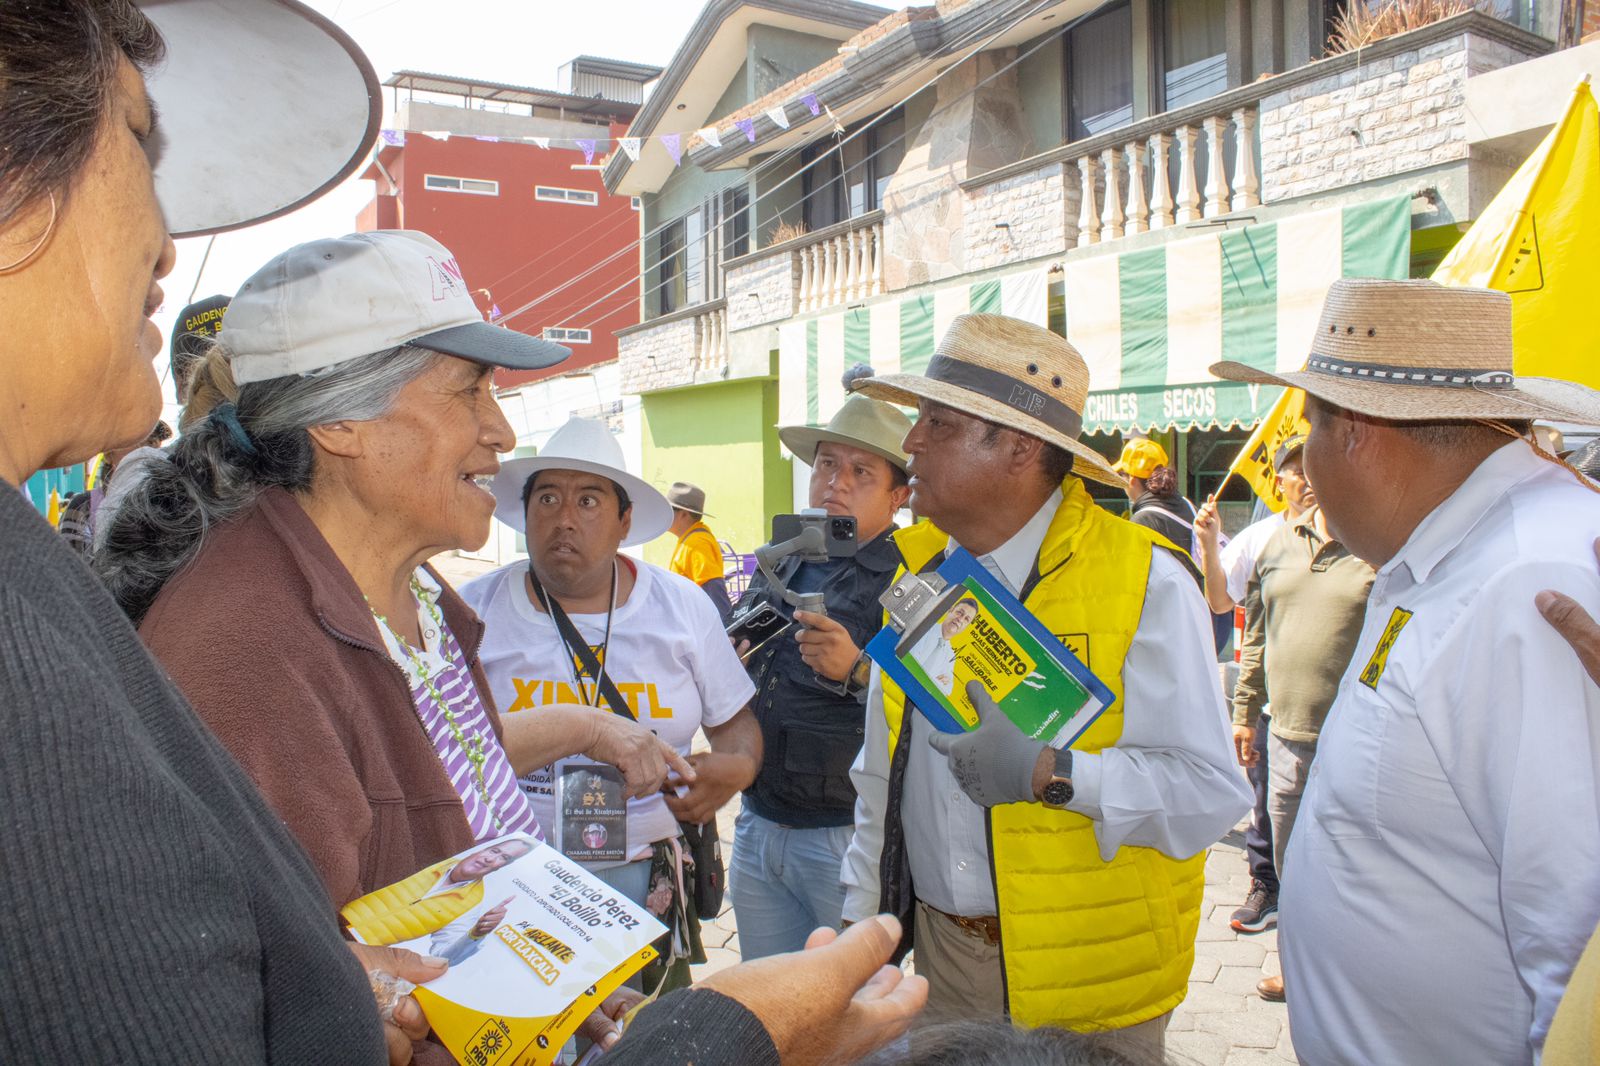 Promete Huberto Rojas Hernández reconciliación y seguridad en inicio de su campaña por la alcaldía de Xicohtzinco